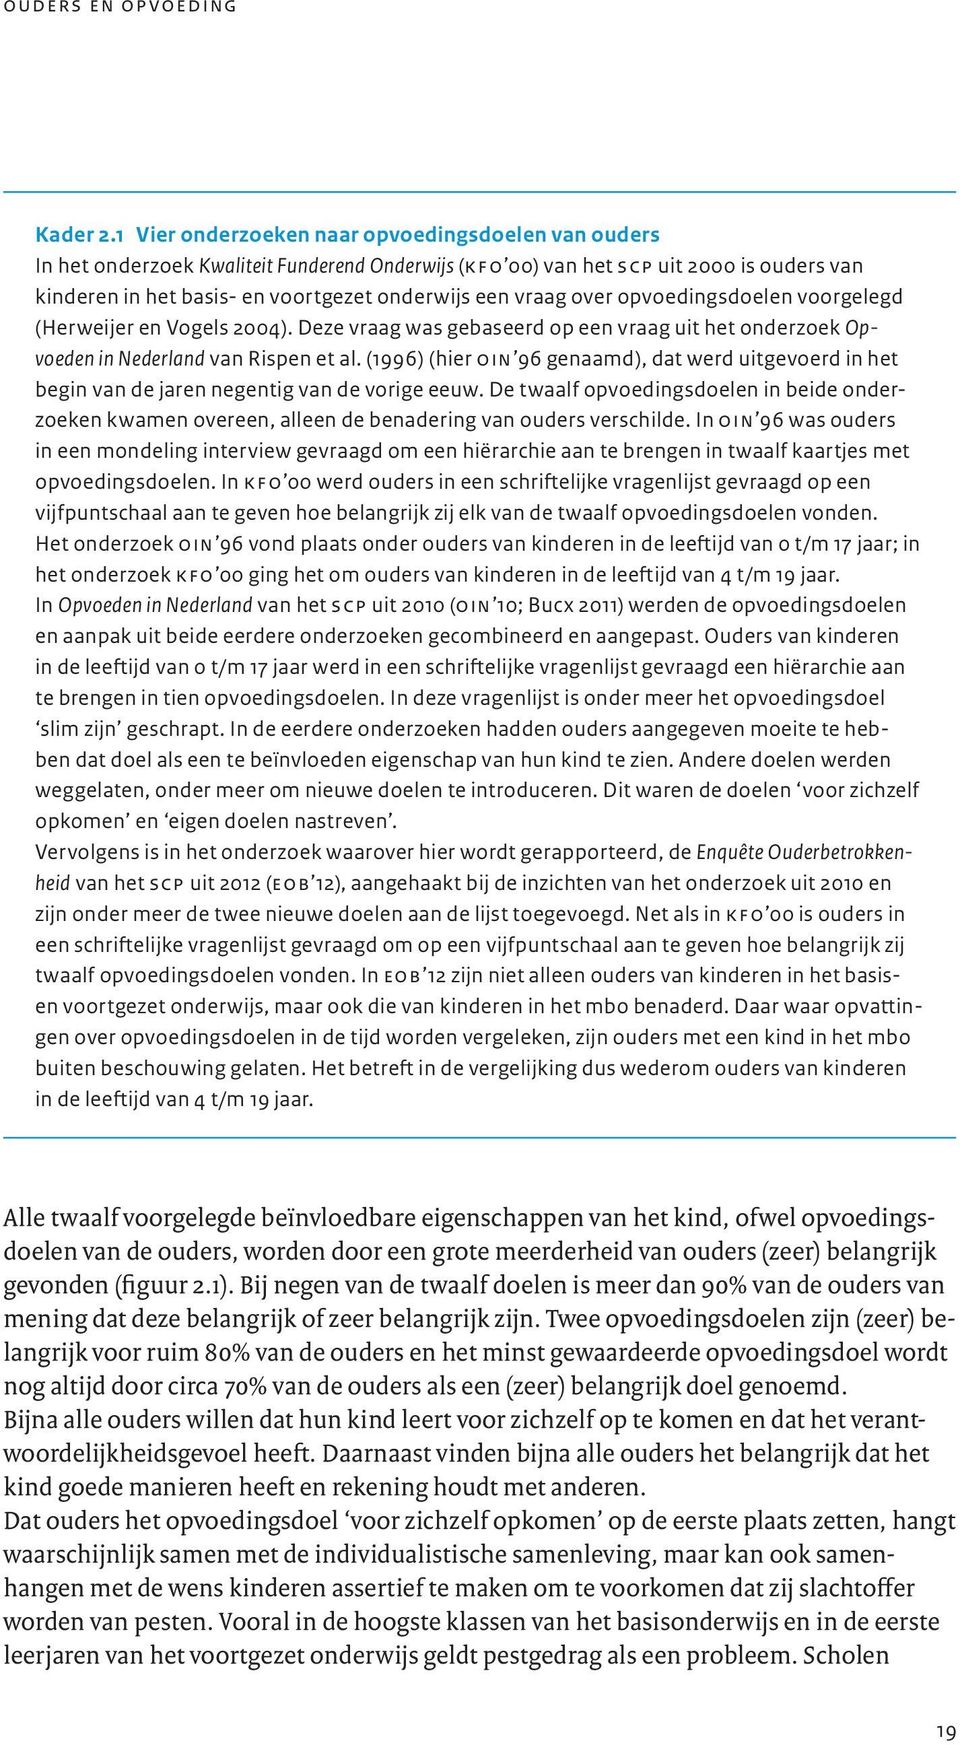 over opvoedingsdoelen voorgelegd (Herweijer en Vogels 2004). Deze vraag was gebaseerd op een vraag uit het onderzoek Opvoeden in Nederland van Rispen et al.